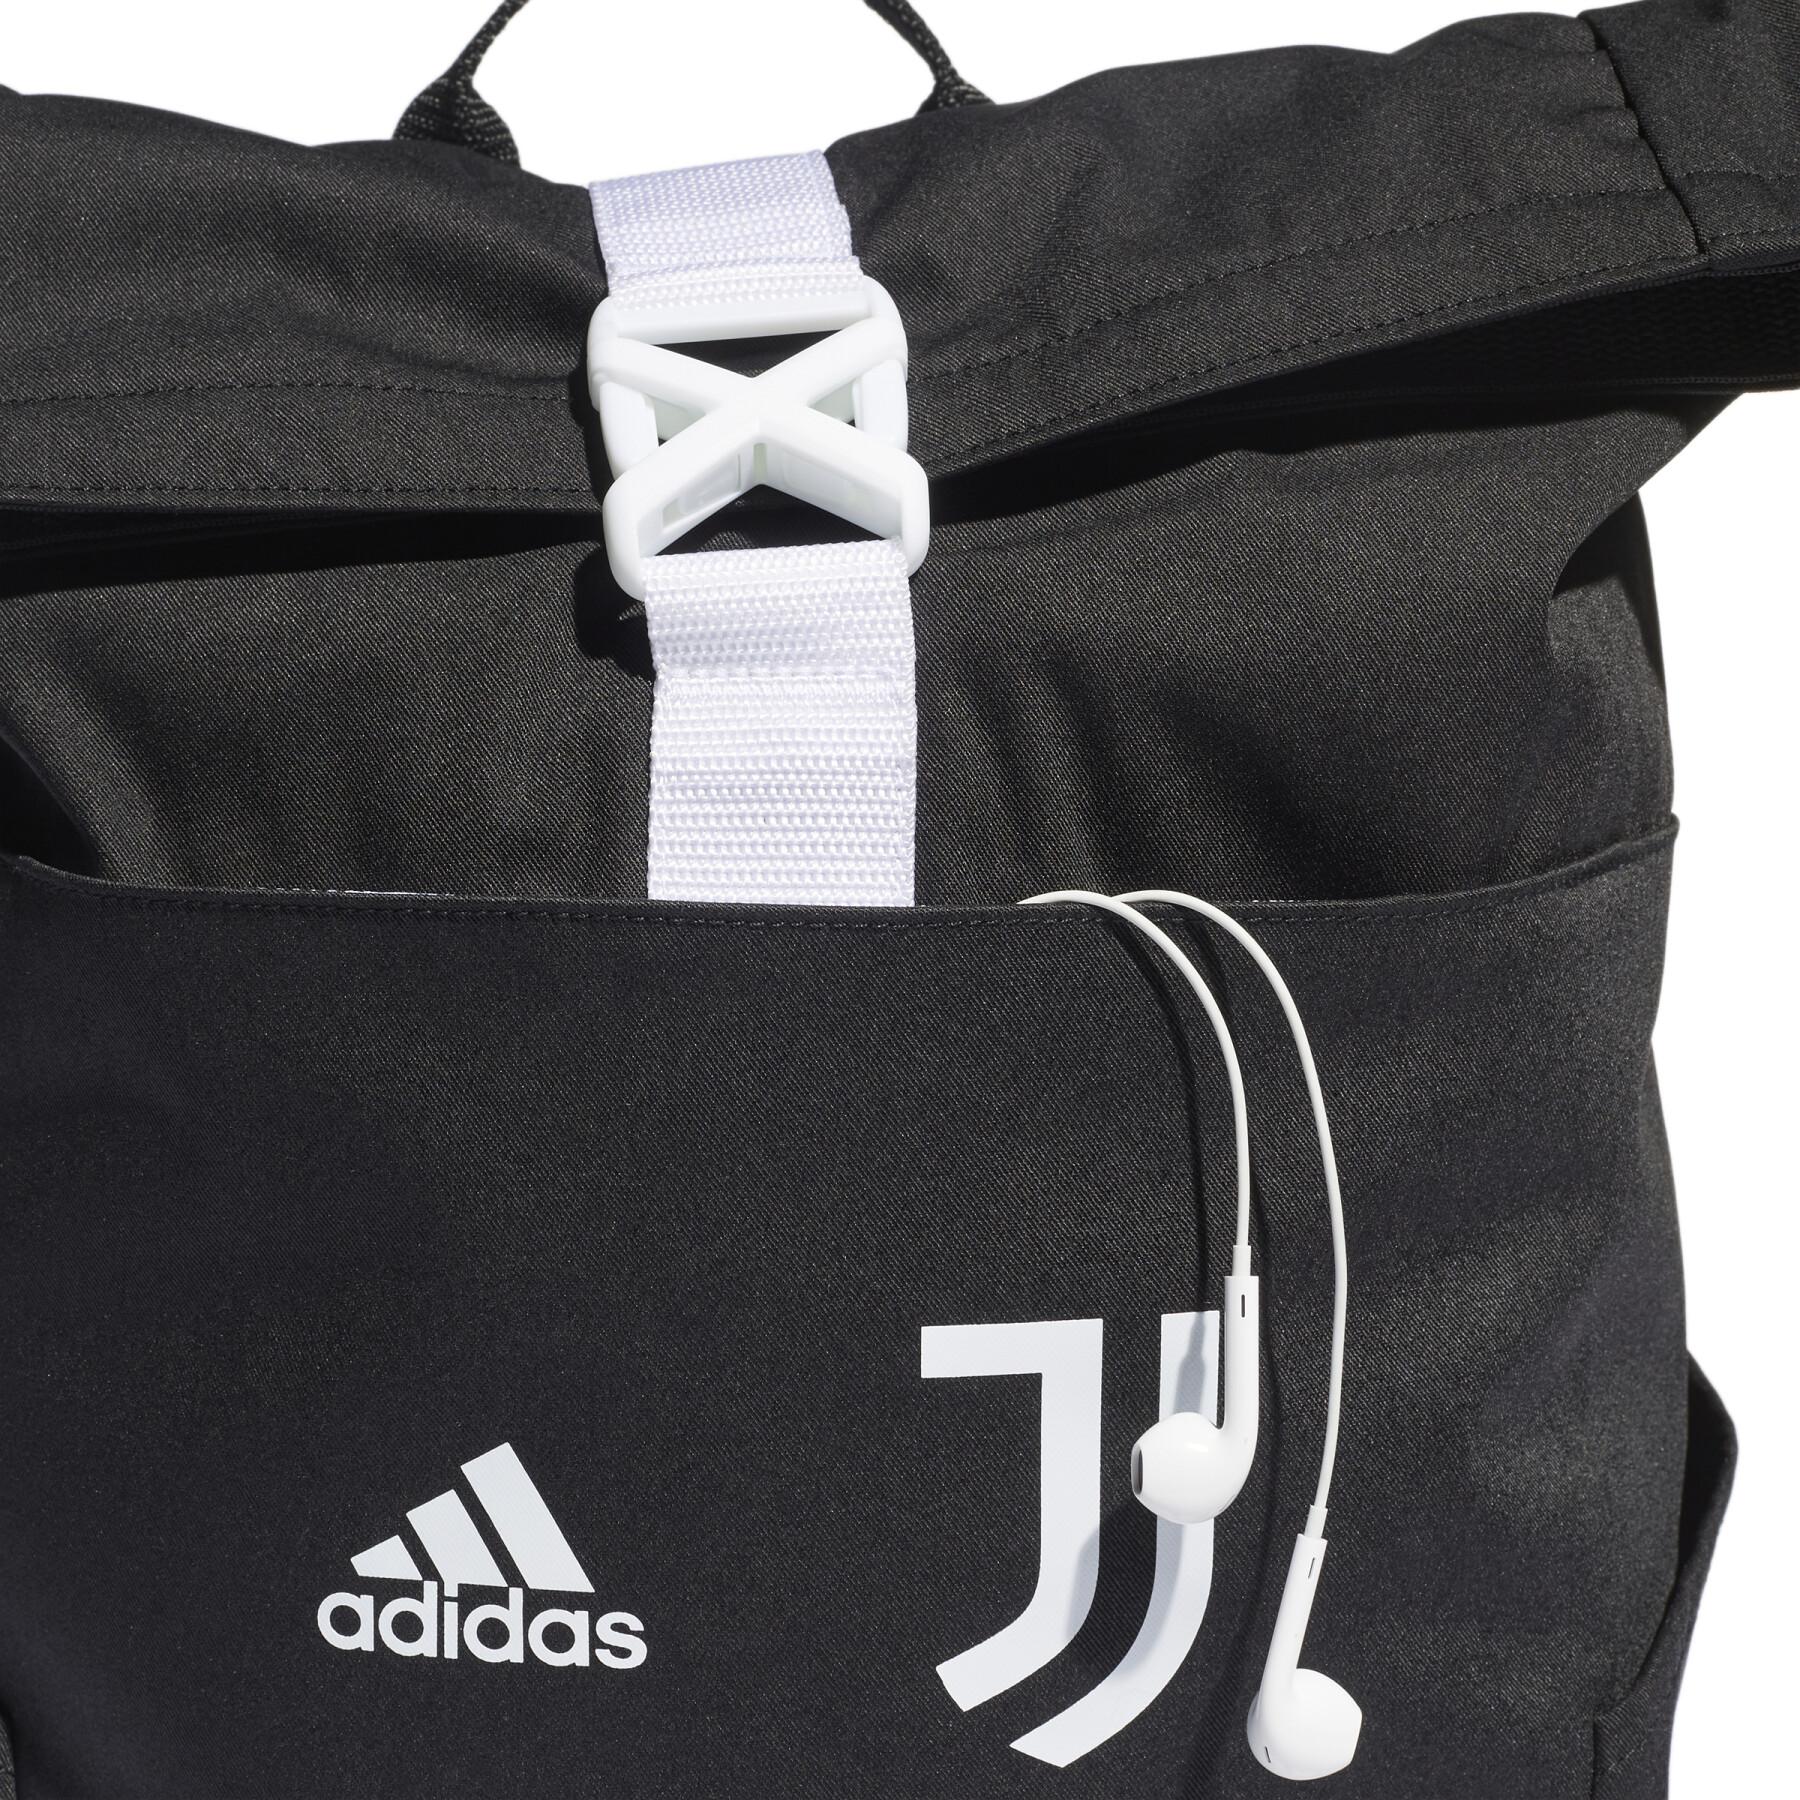 Plecak Juventus Turin 2022/23